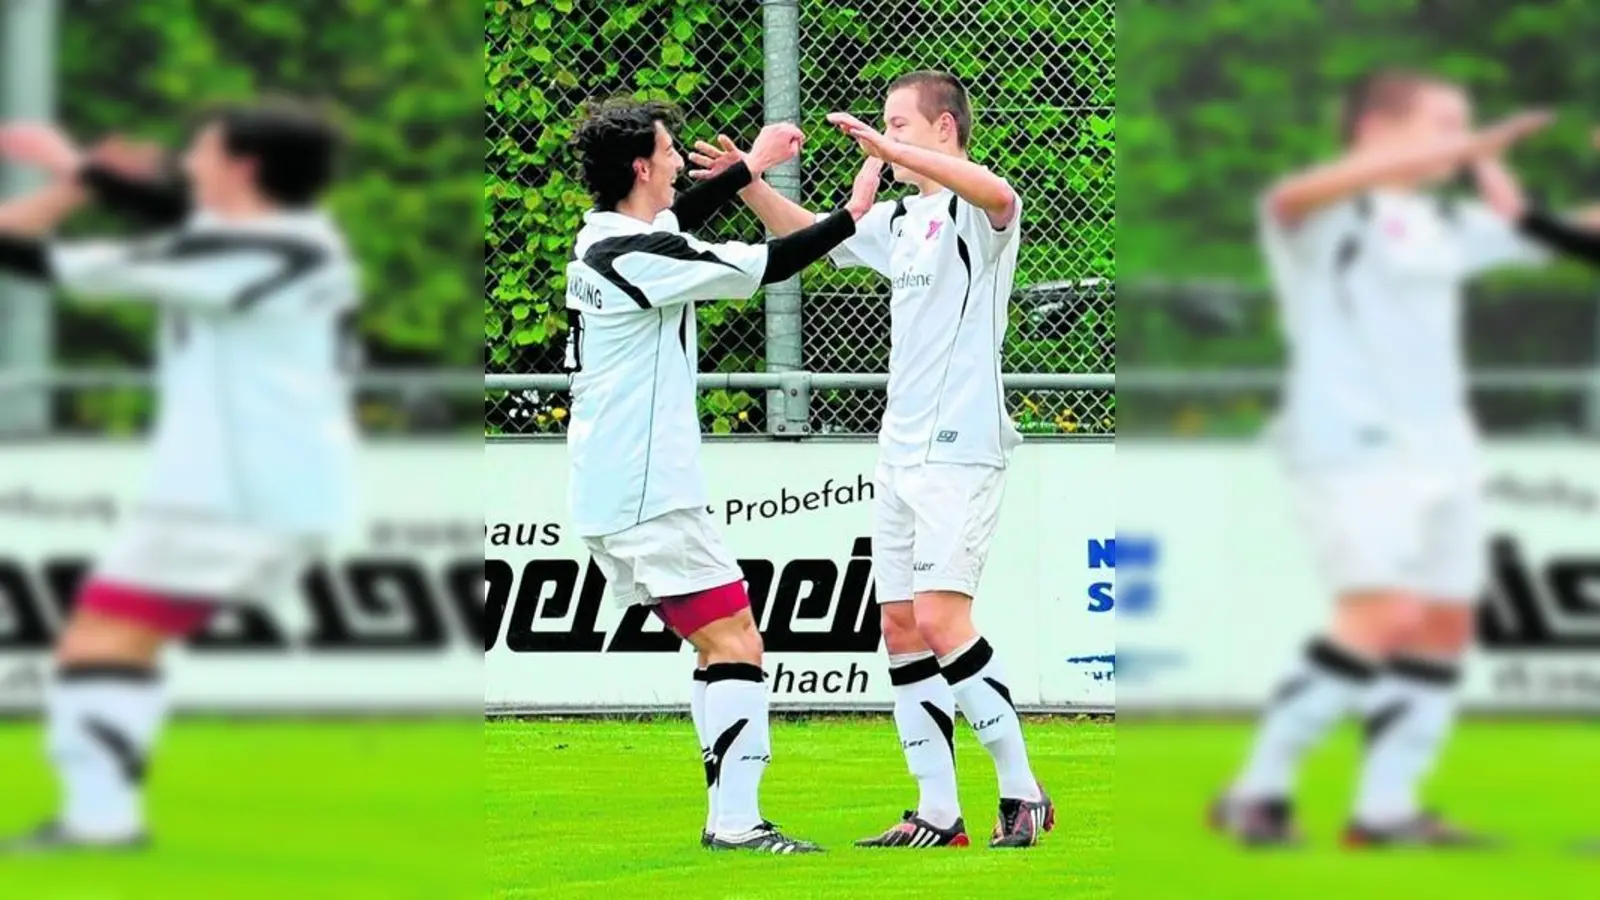 &lt;p&gt; &lt;x_bildunterschr&gt; &lt;b&gt;Qendrim Beqiri &lt;/b&gt; (links) freut sich mit Franz Hübl über dessen Traumtor zum Aindlinger 1:0-Sieg über Memmingen. Für die kommenden Saison werden sich höchstwahrscheinlich ihre Wege trennen. Während Hübl beim TSV schon verlängerte, wird Beqiri wohl zum Regionalliga-Team des 1. FC Nürnberg wechseln. &lt;tab/&gt; &lt;tab/&gt; &lt;tab/&gt;Foto: Kerpf &lt;/x_bildunterschr&gt; &lt;/p&gt;